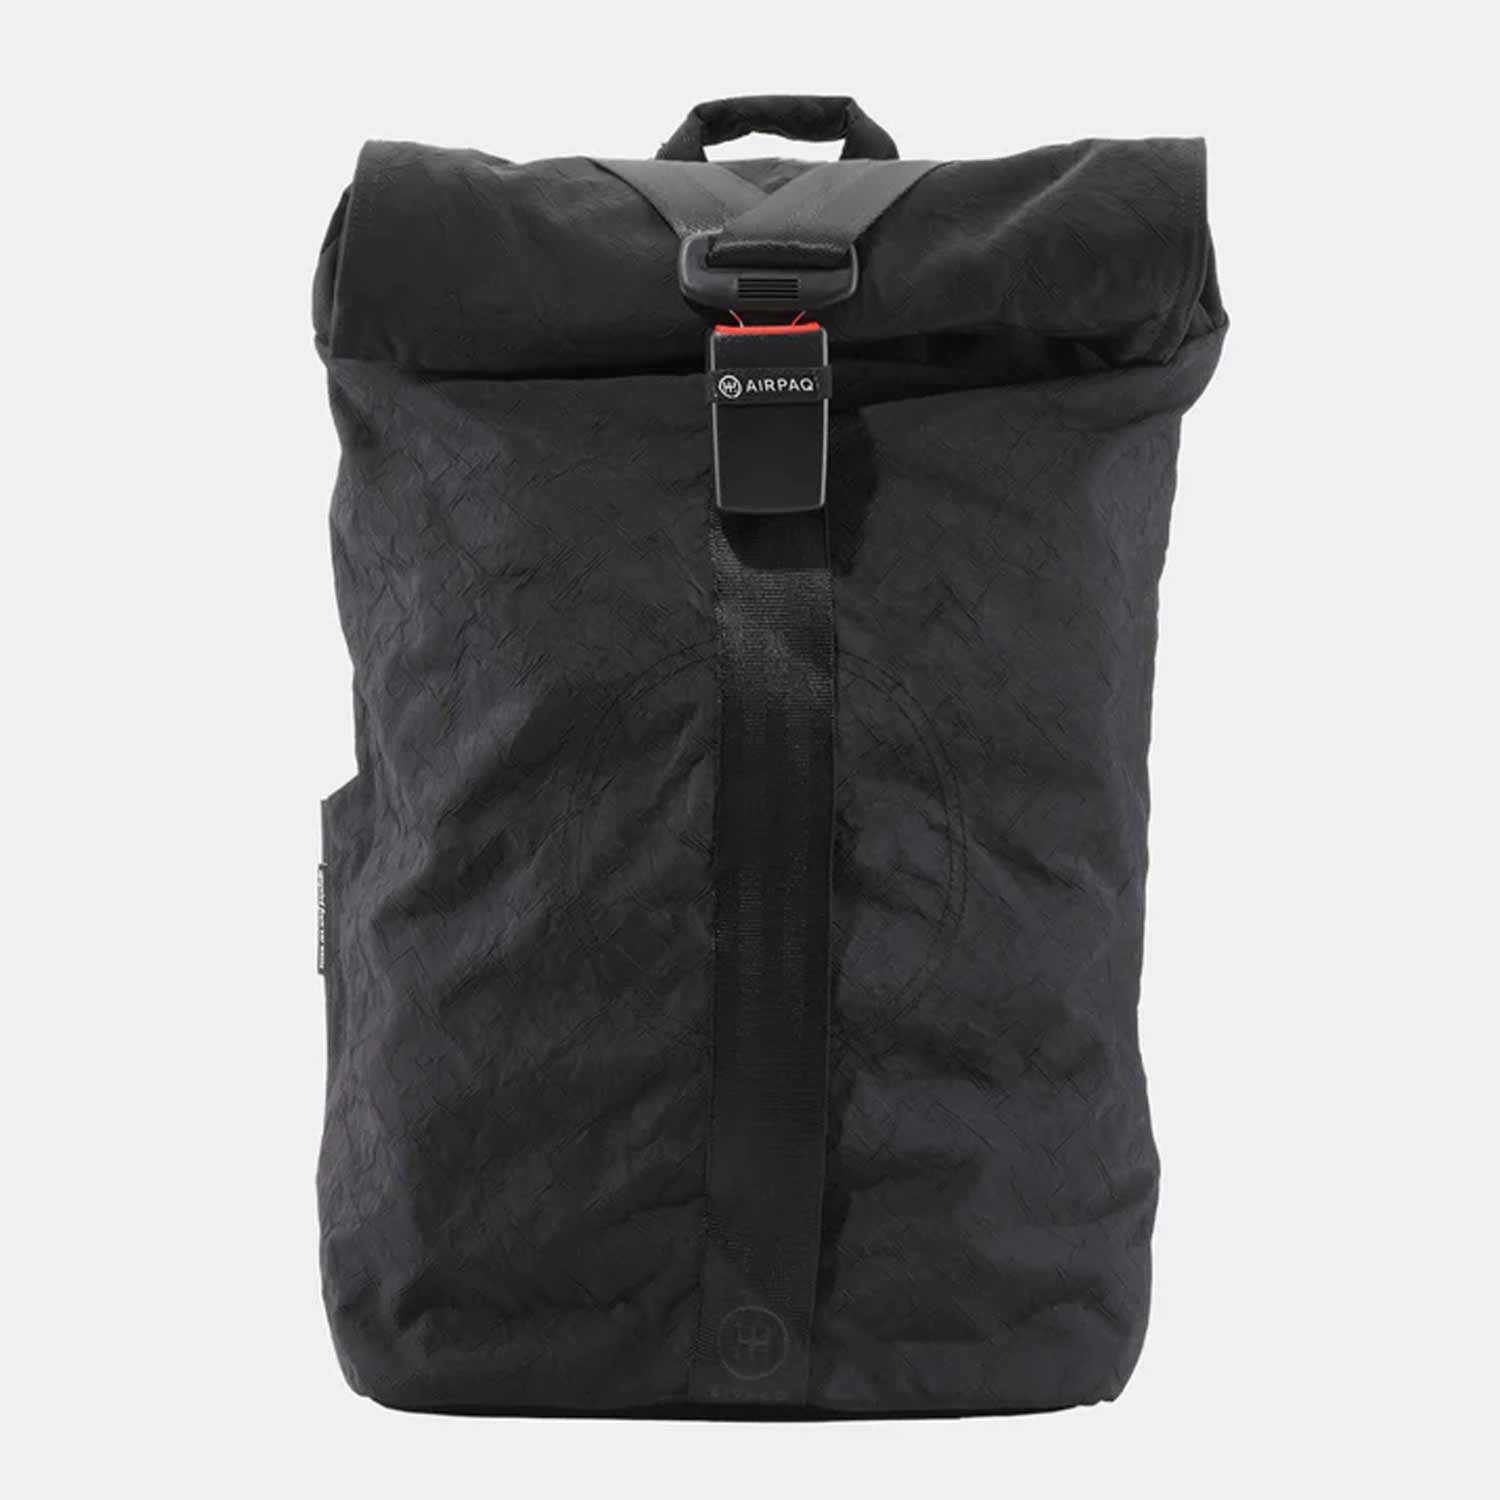 schwarzer extra großer Rolltop Rucksack von Airpaq aus recyceltem Autoschrott wie Airbags und Gurten